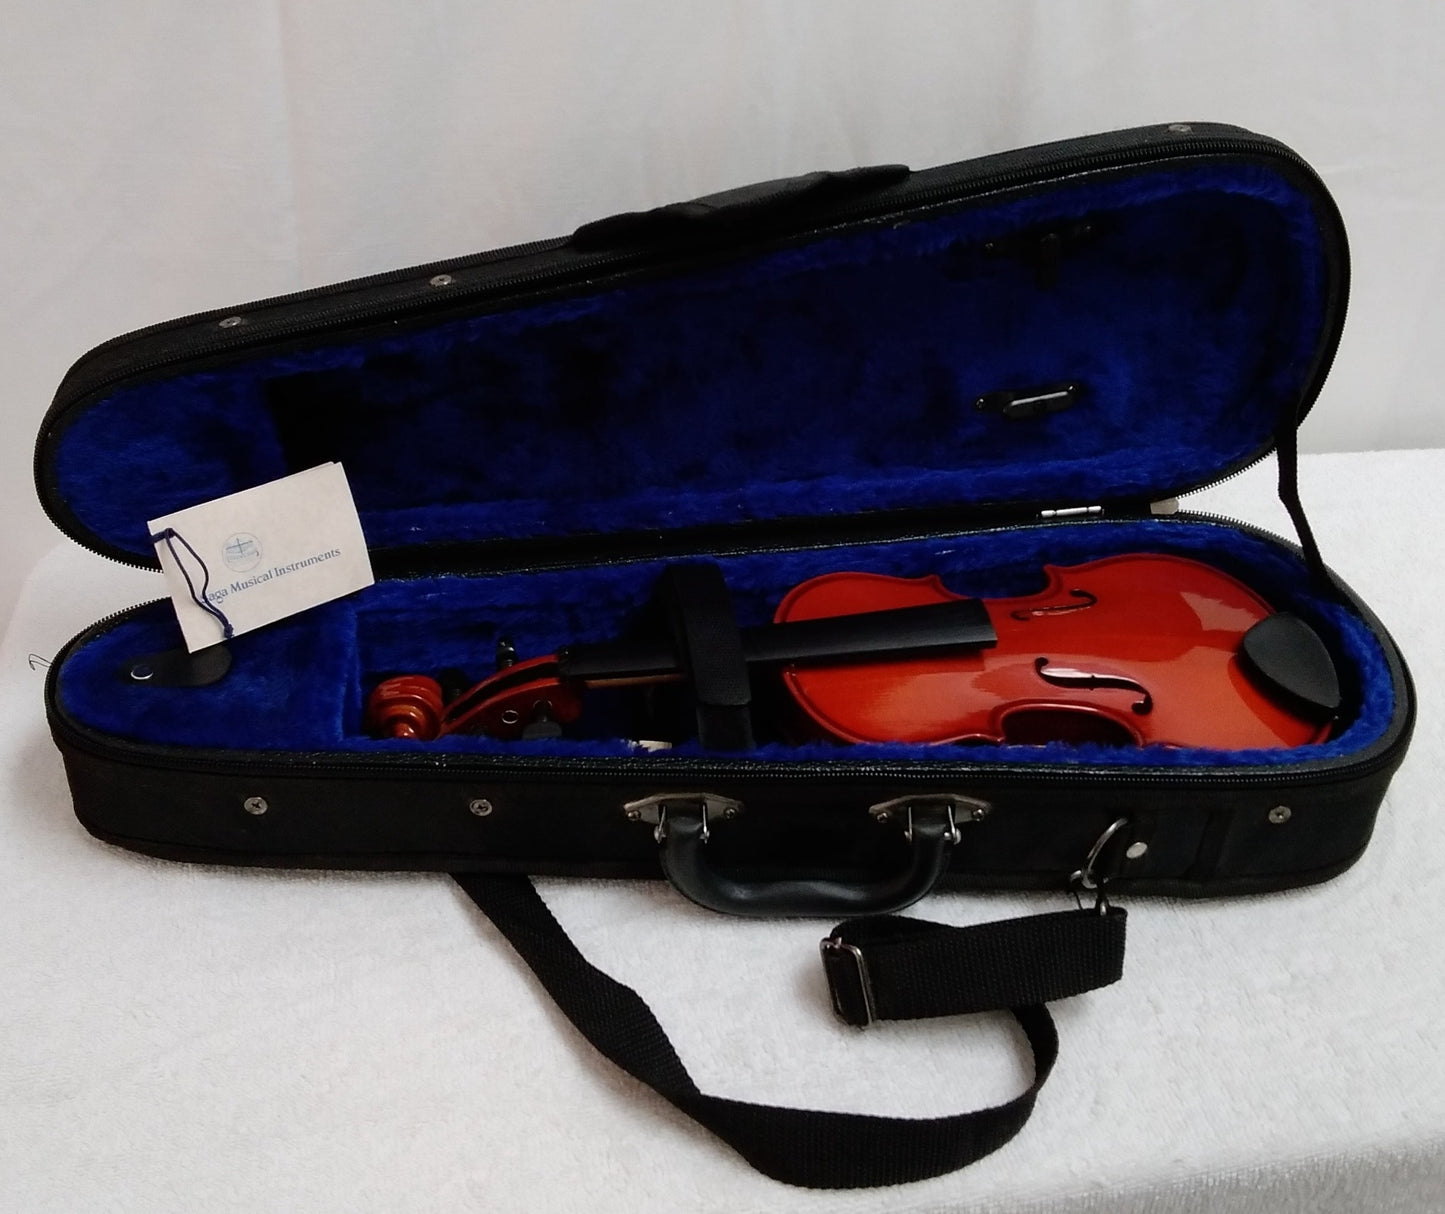 Cremona SV-175 violin -- Size 1/16 -- 2003 model